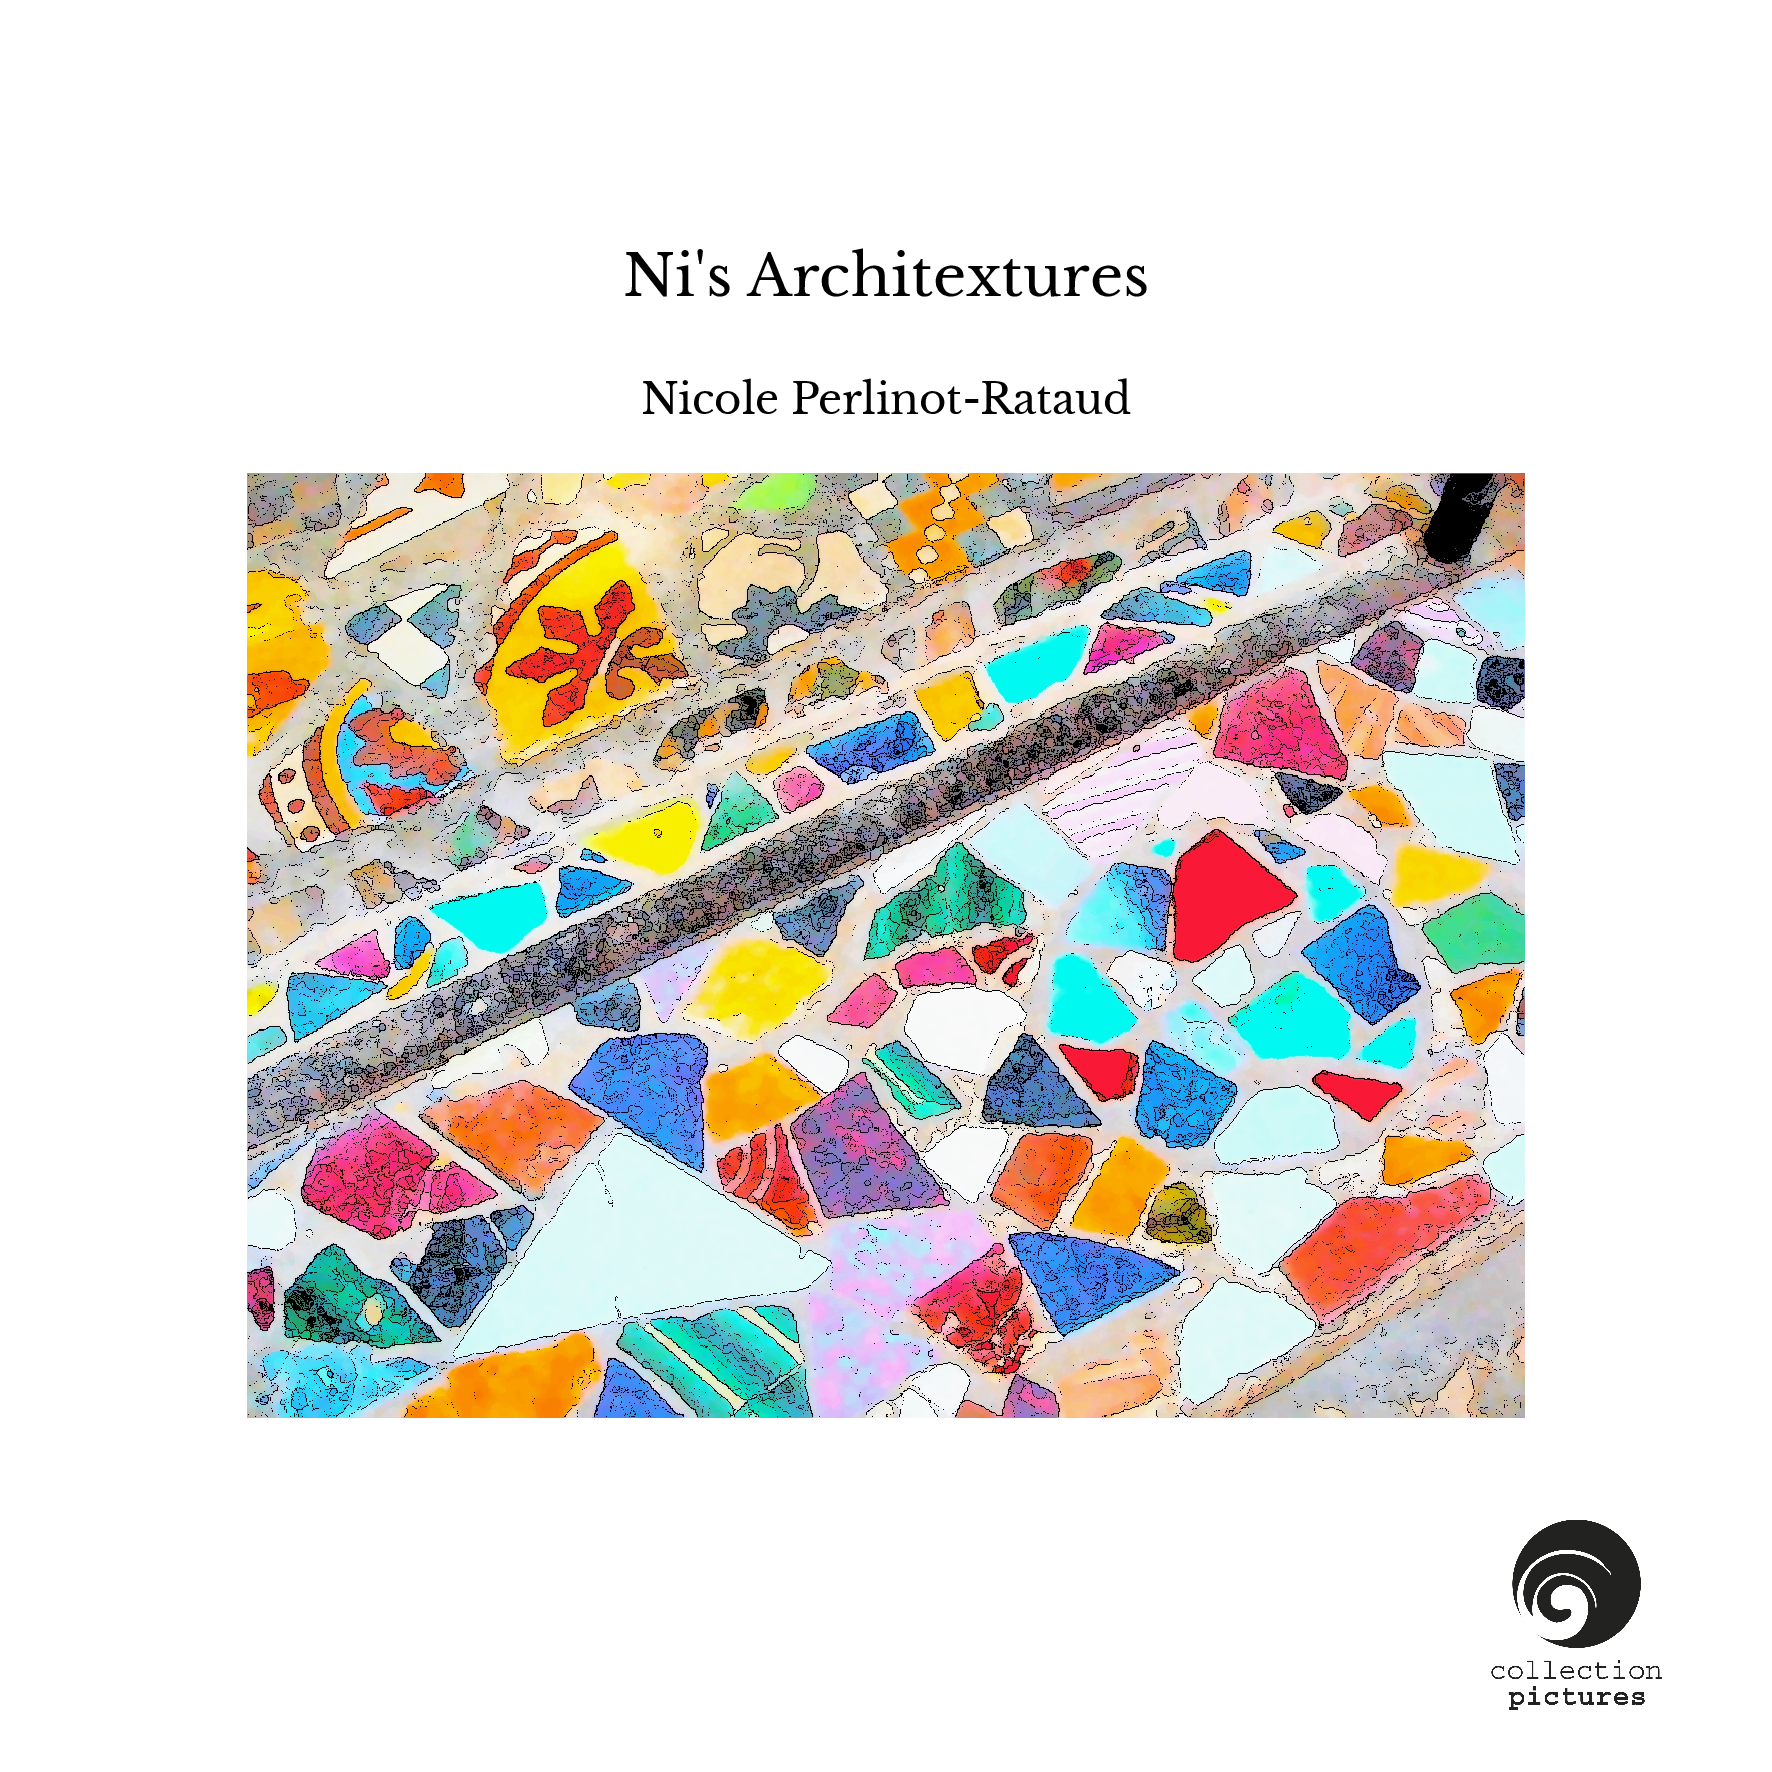 Ni's Architextures